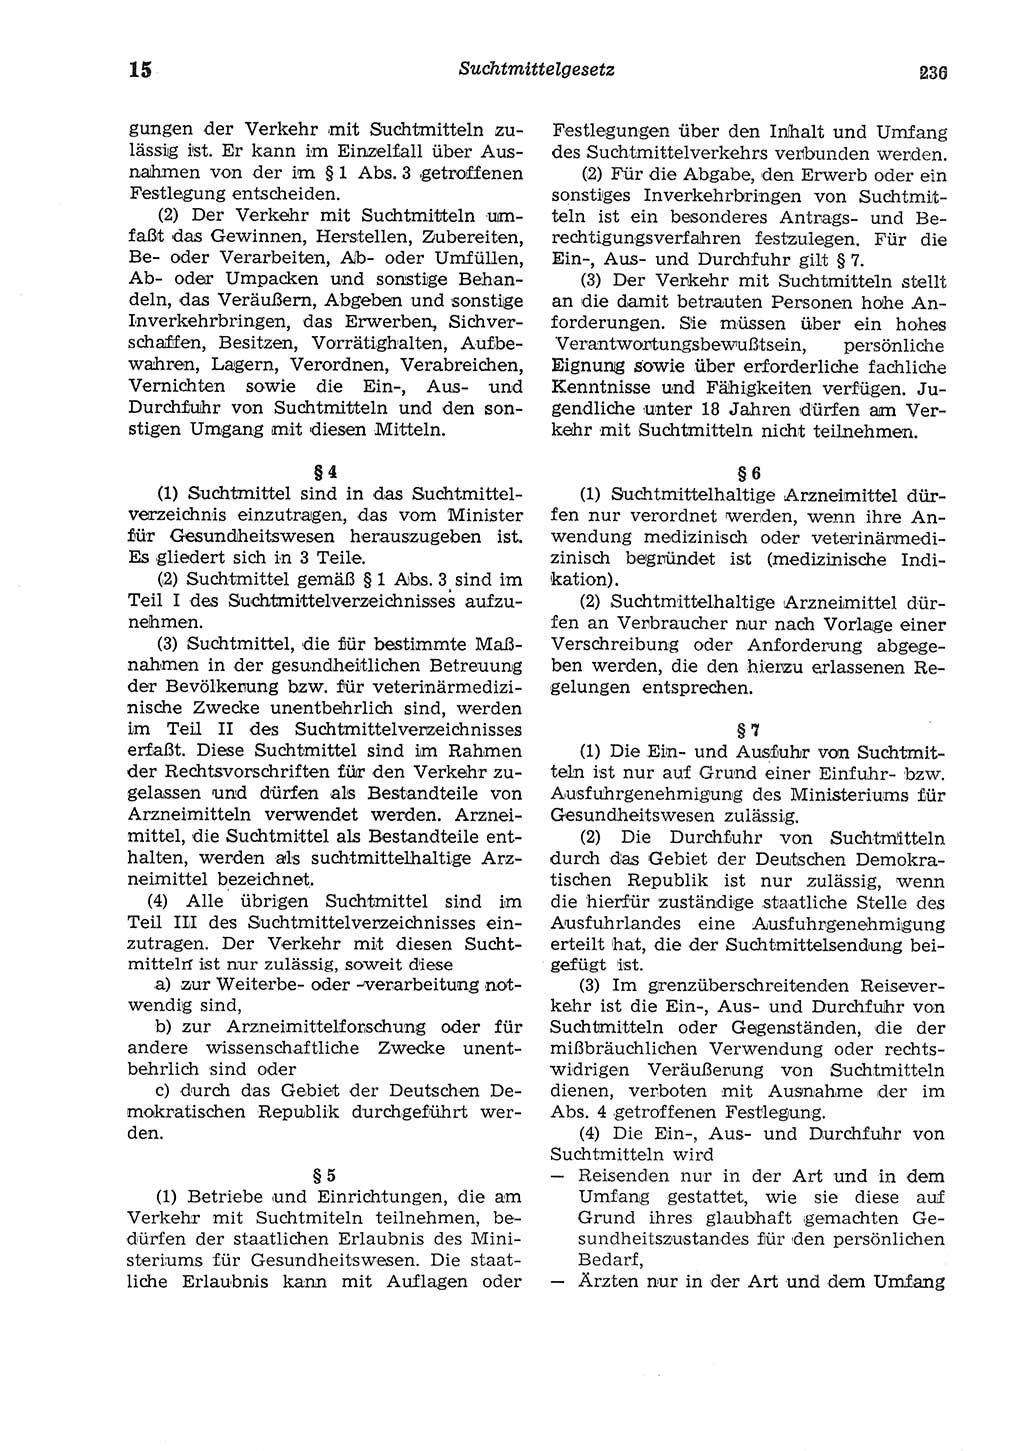 Strafgesetzbuch (StGB) der Deutschen Demokratischen Republik (DDR) und angrenzende Gesetze und Bestimmungen 1975, Seite 236 (StGB DDR Ges. Best. 1975, S. 236)